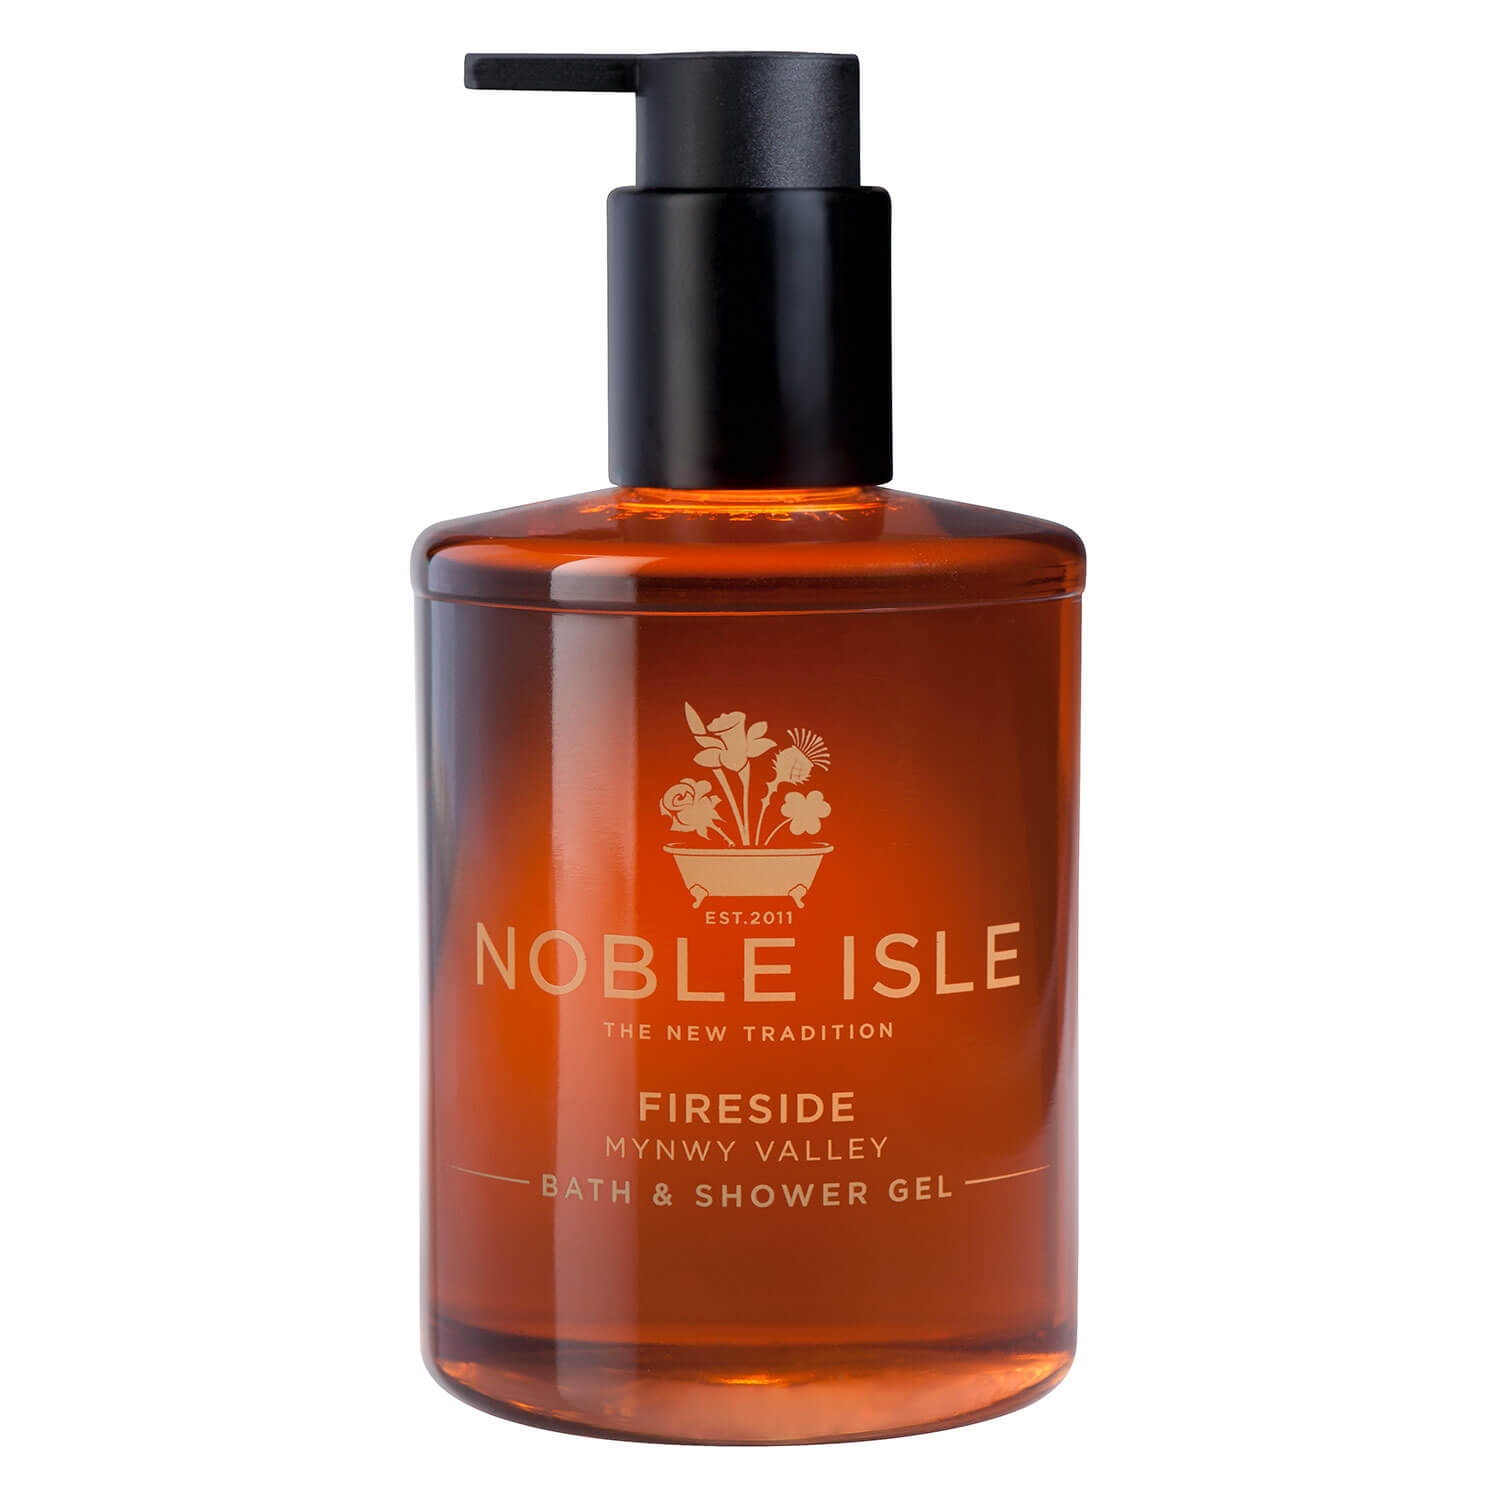 Produktbild von Noble Isle - Fireside Bath & Shower Gel